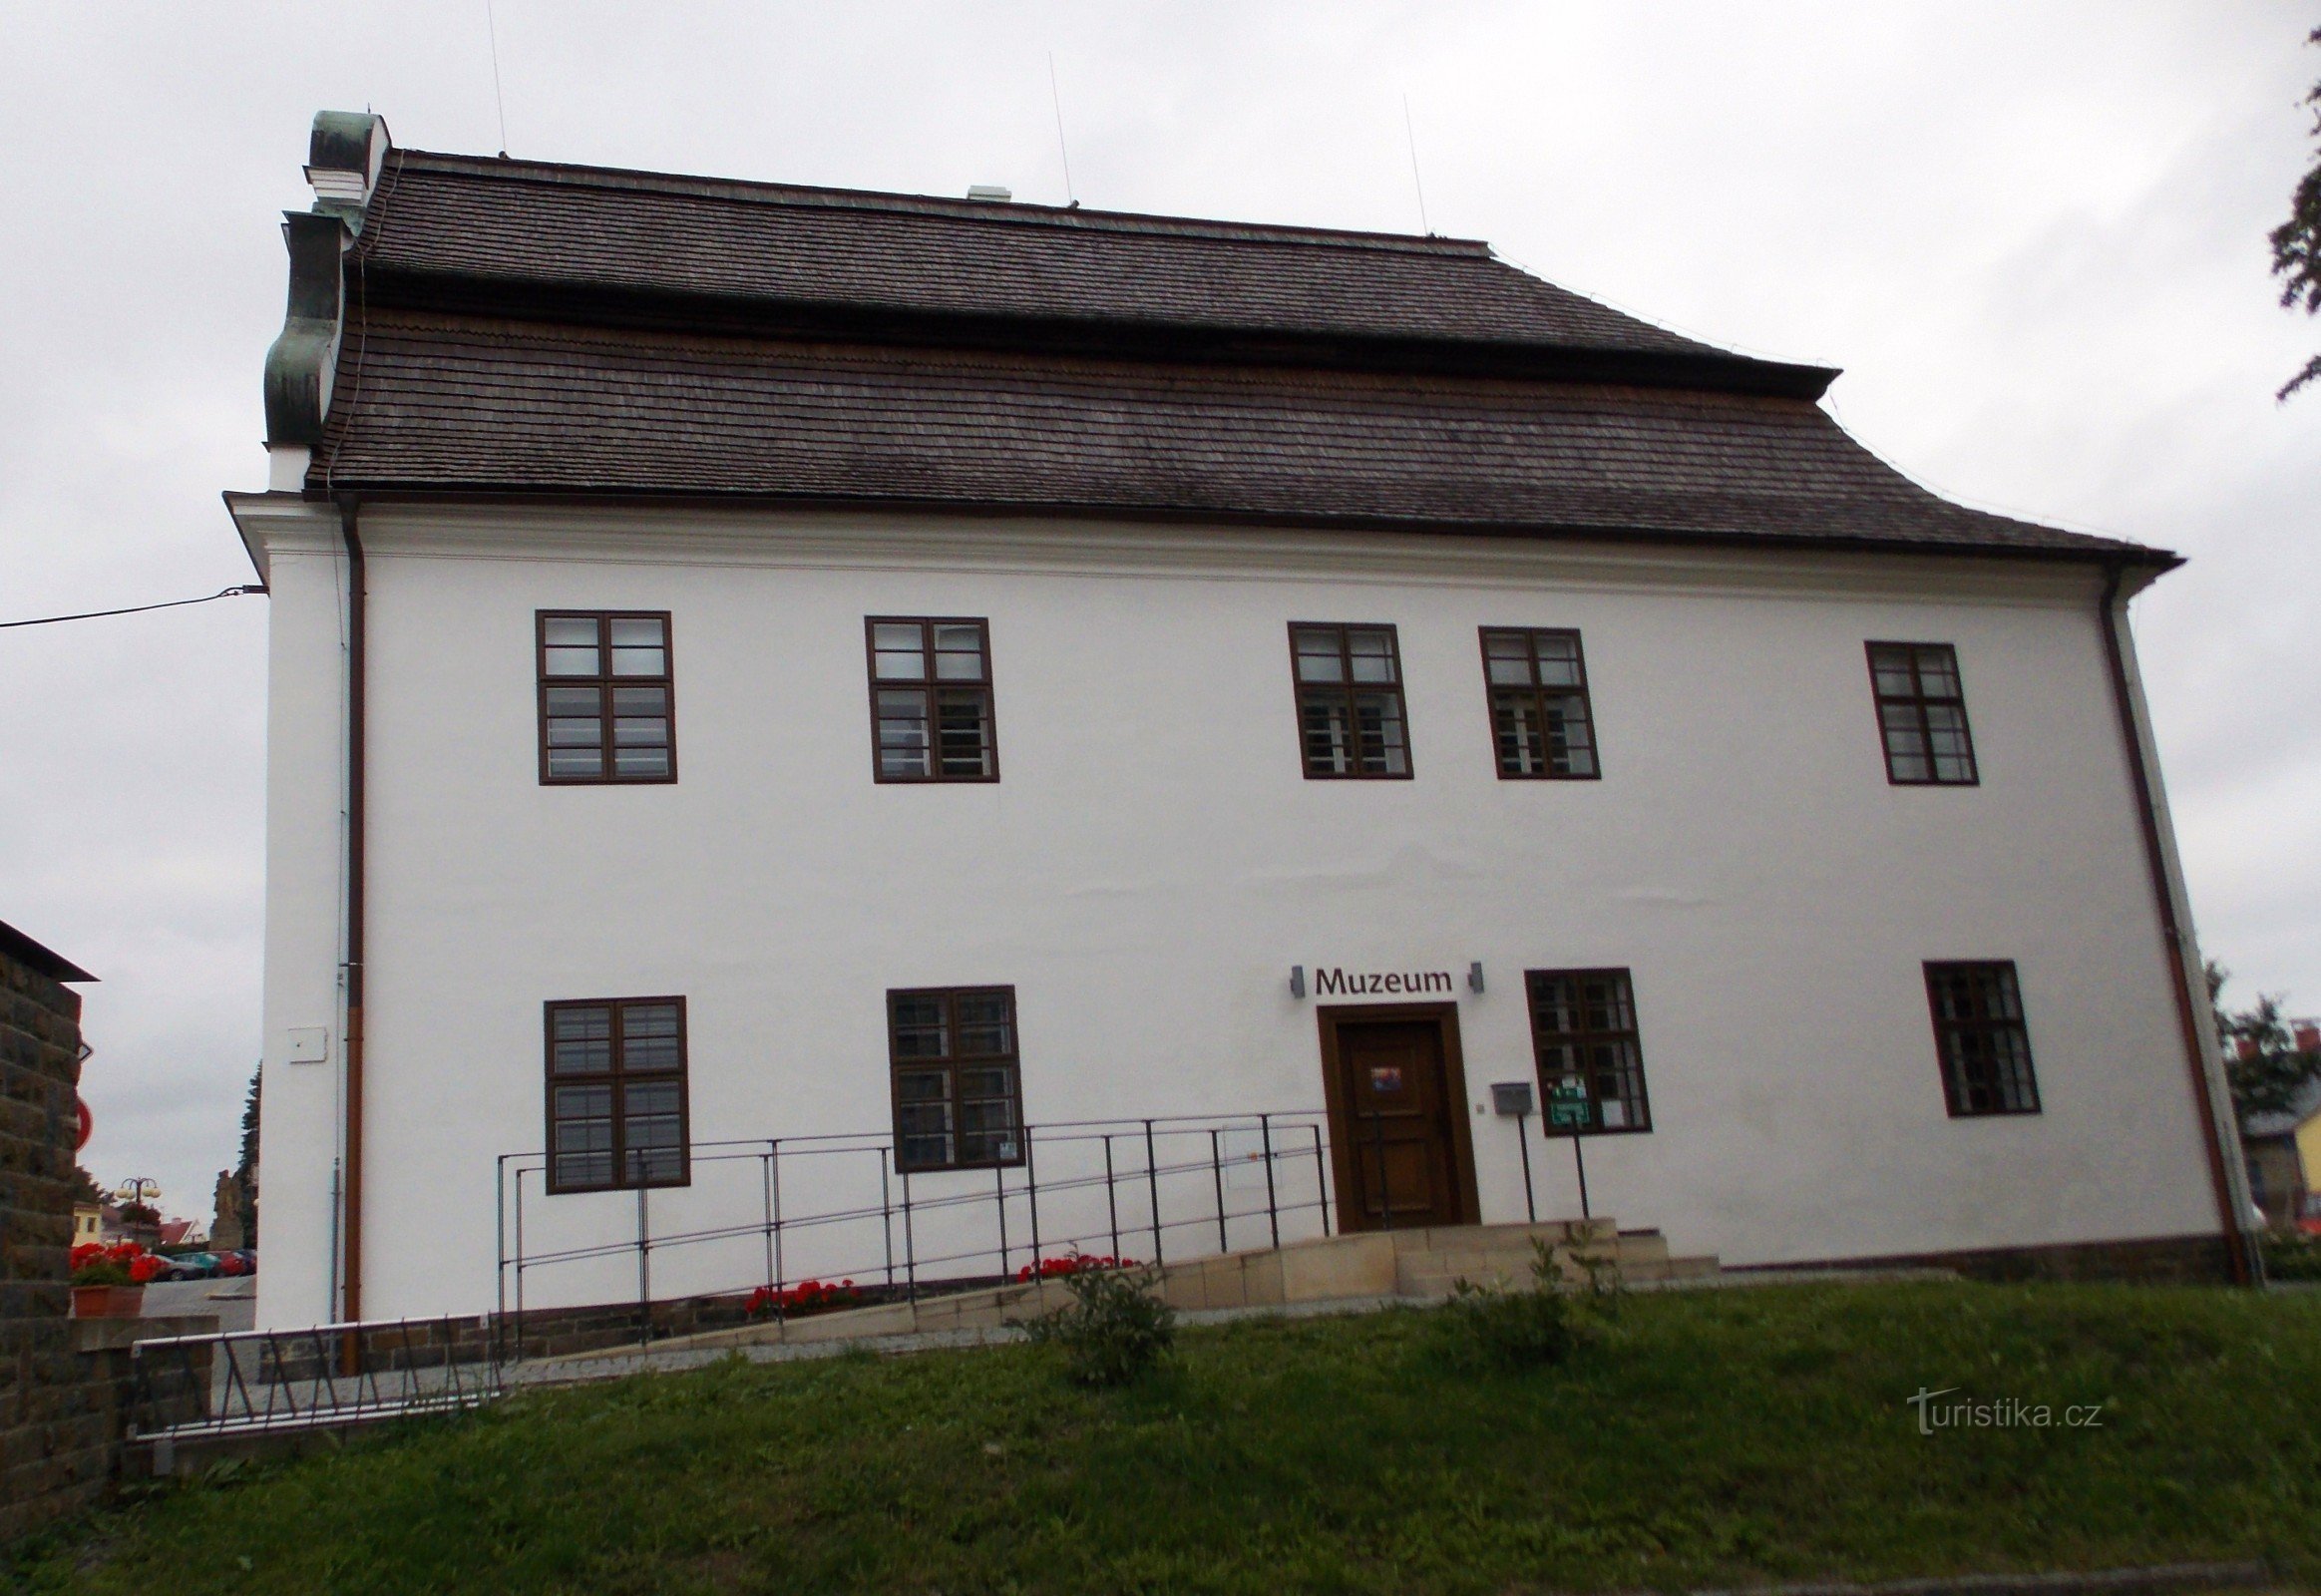 Zum Museum in Bílovec